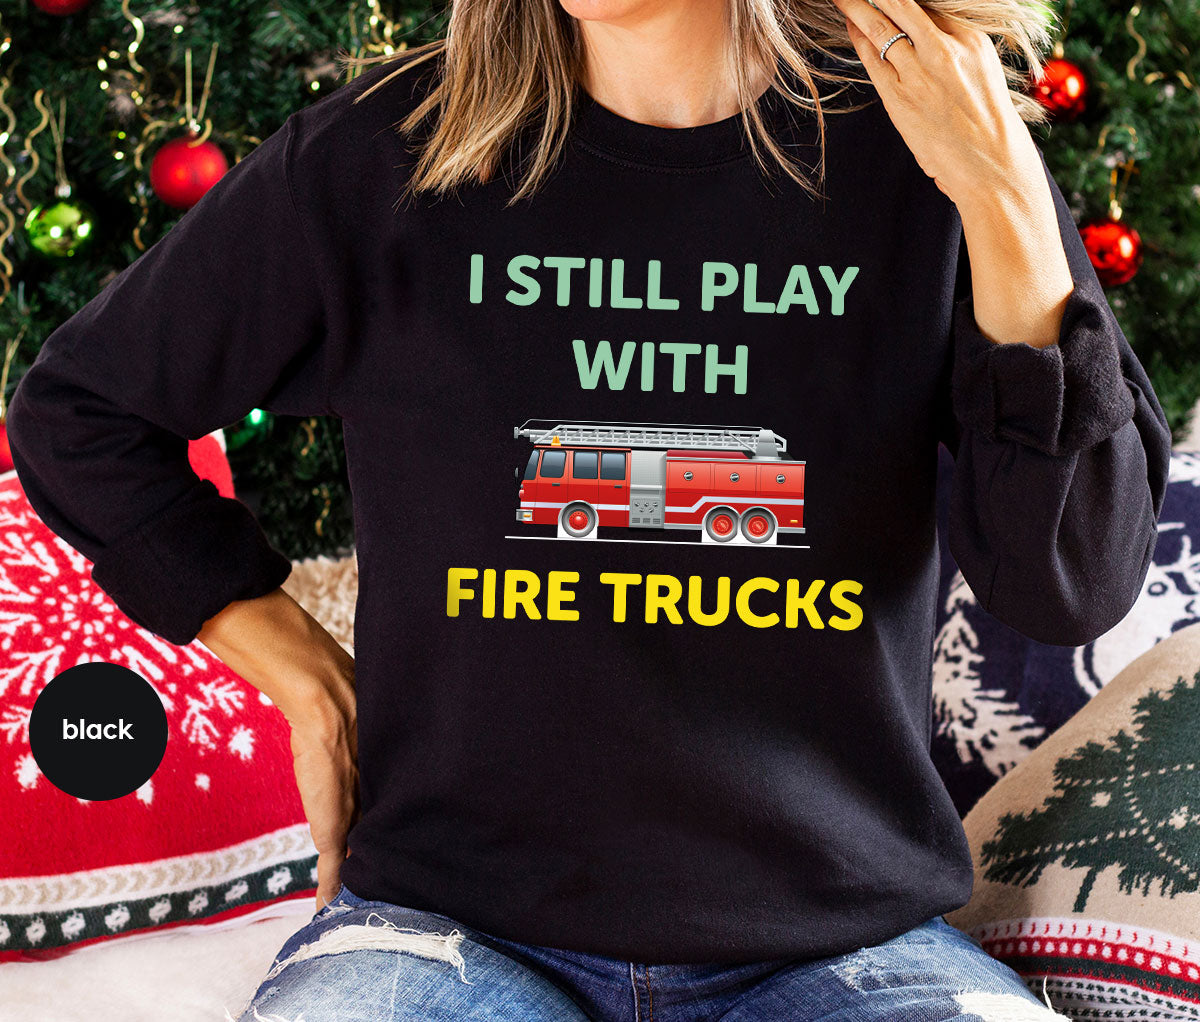 Fire Truck Shirt, Funny Fire Fighter T-Shirt, Fireman Tee